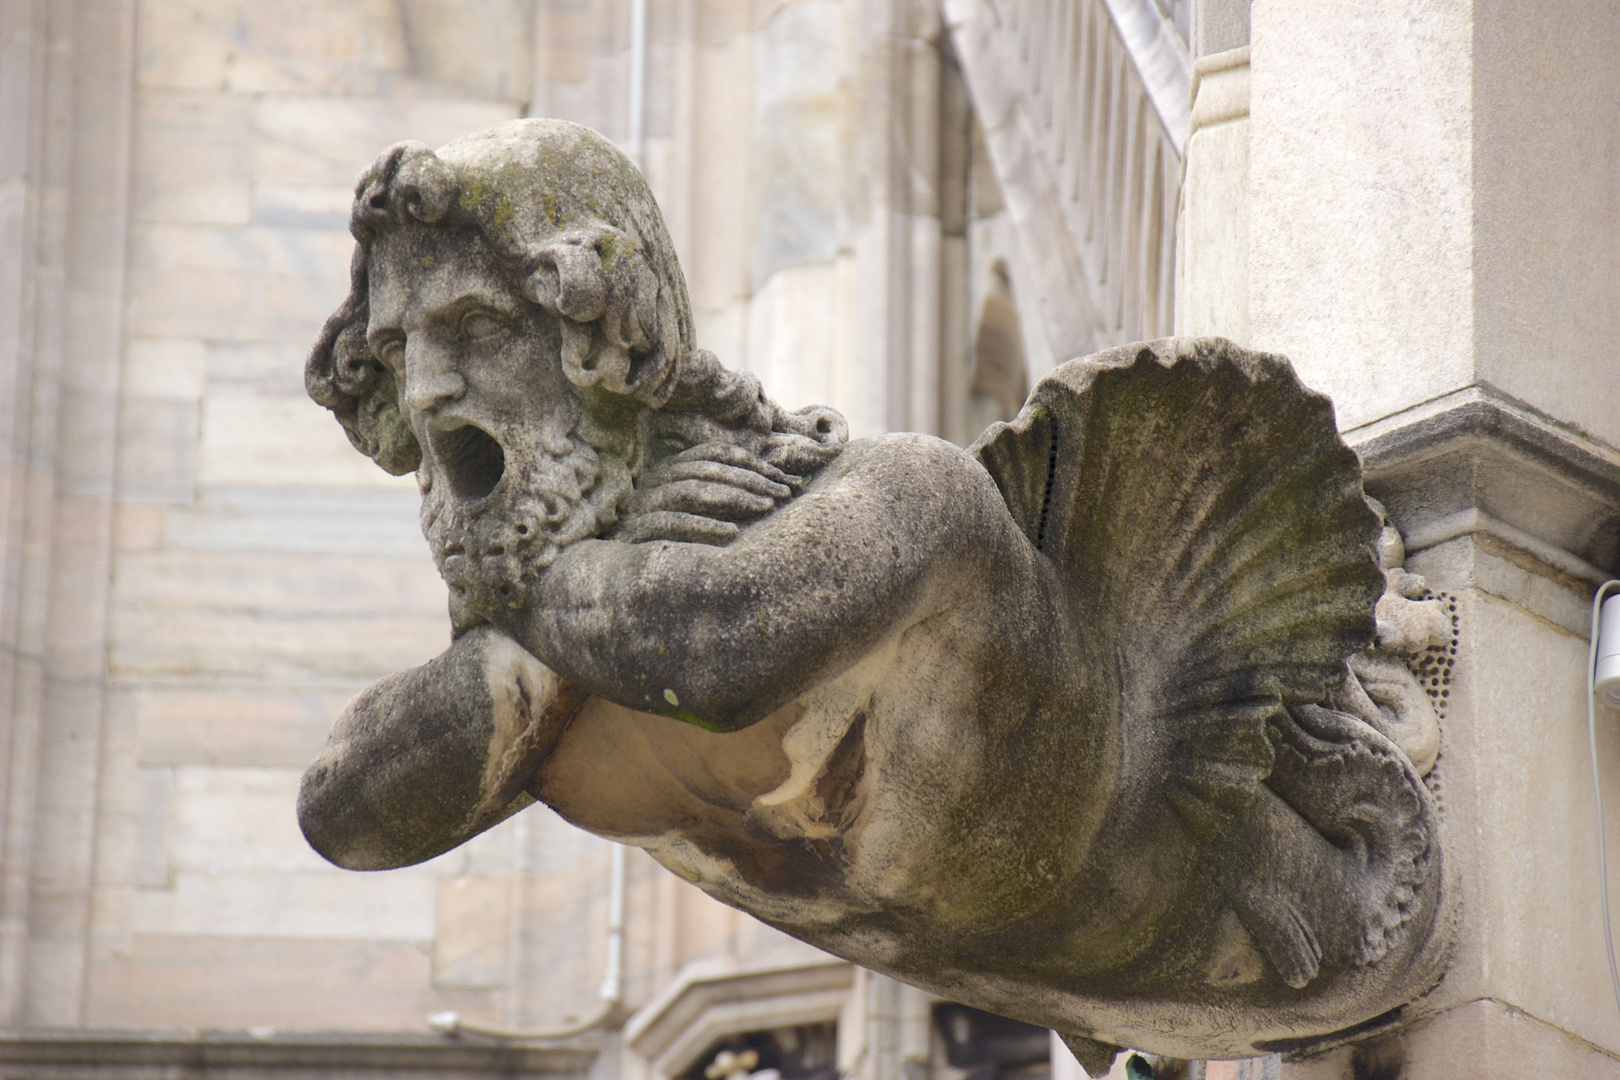 l'uomo pesce (avvistato sul Duomo di Milano)